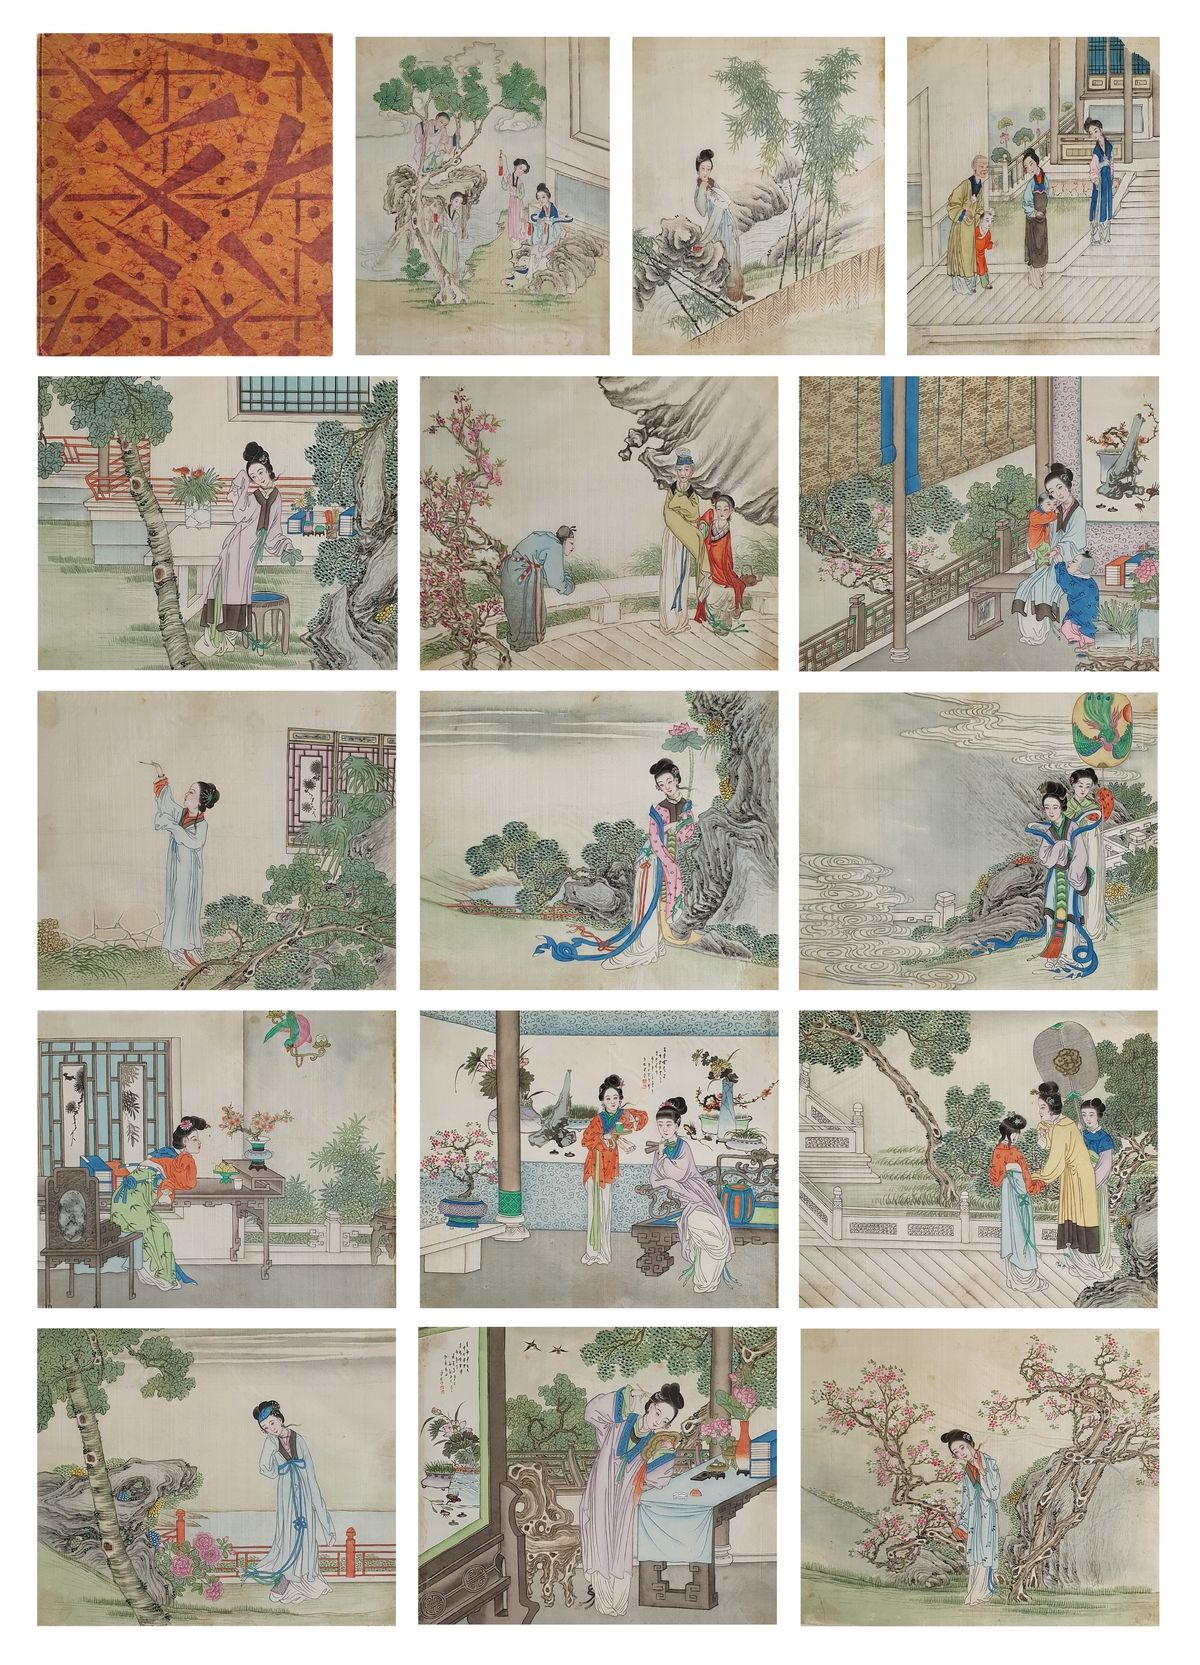 CHINE ca.1900 生活场景
包含15幅钢笔画的丝绸画册，描绘了宫殿和花园的生活场景，纸板封面印有 "至上主义 "装饰，大约在1915年。污渍和磨损。
&hellip;